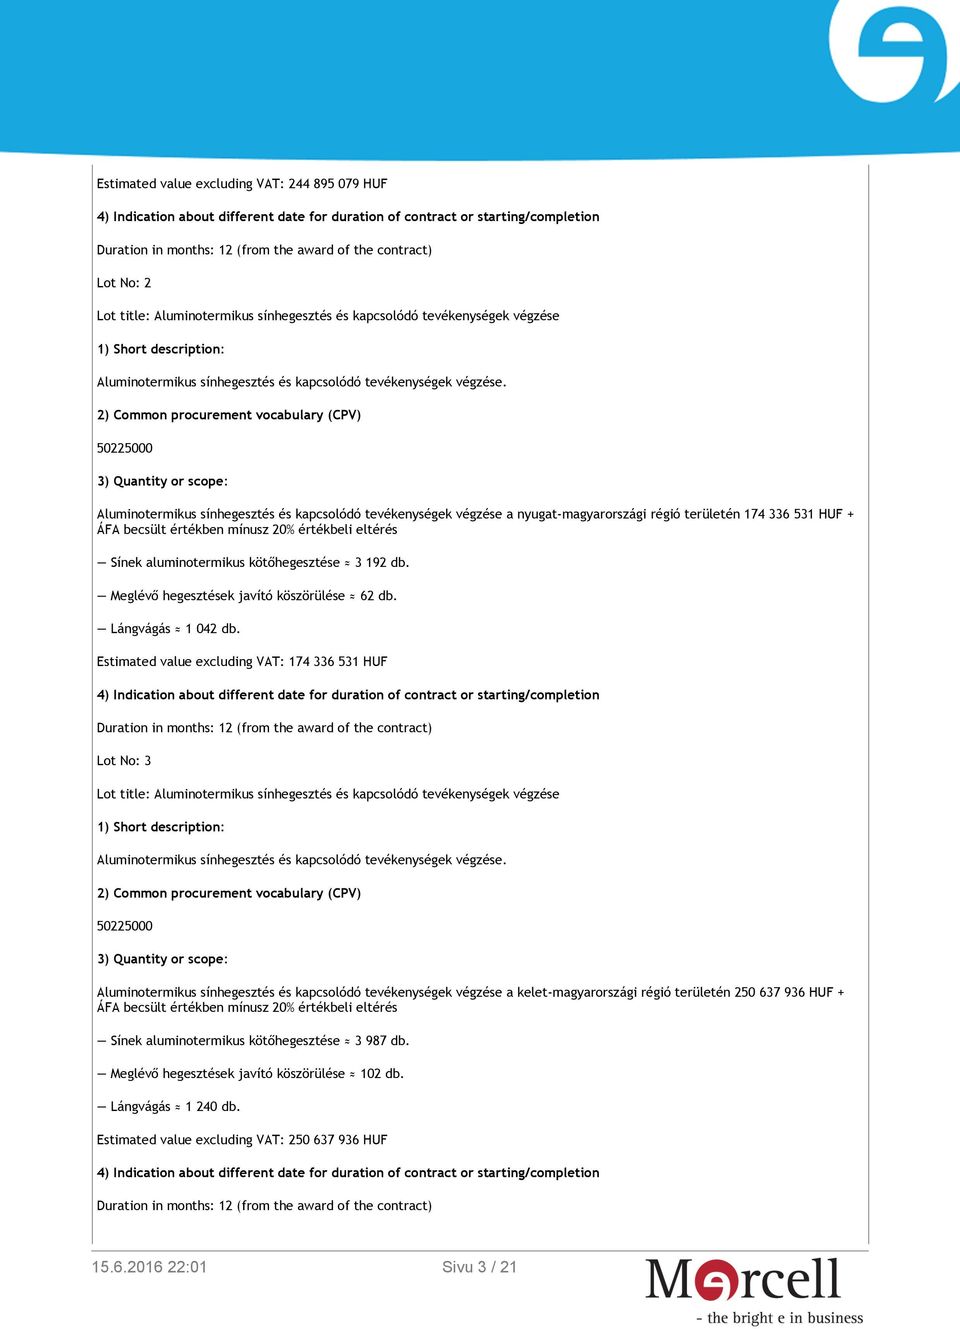 2) Common procurement vocabulary (CPV) 3) Quantity or scope: Aluminotermikus sínhegesztés és kapcsolódó tevékenységek végzése a nyugat-magyarországi régió területén 174 336 531 HUF + ÁFA becsült